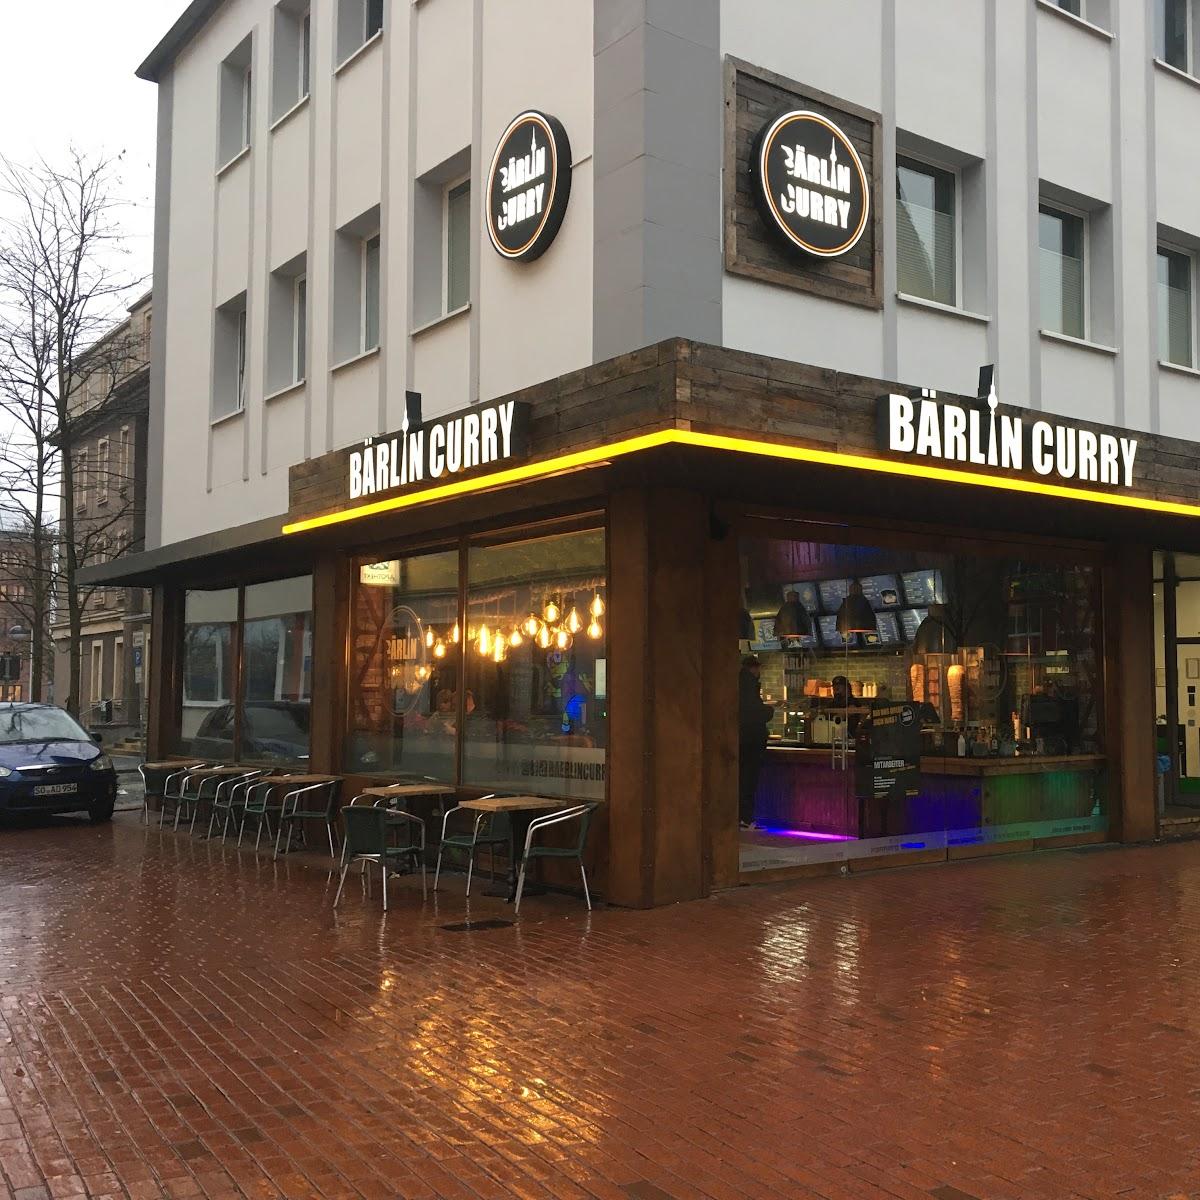 Restaurant "Bärlin Curry" in Hamm